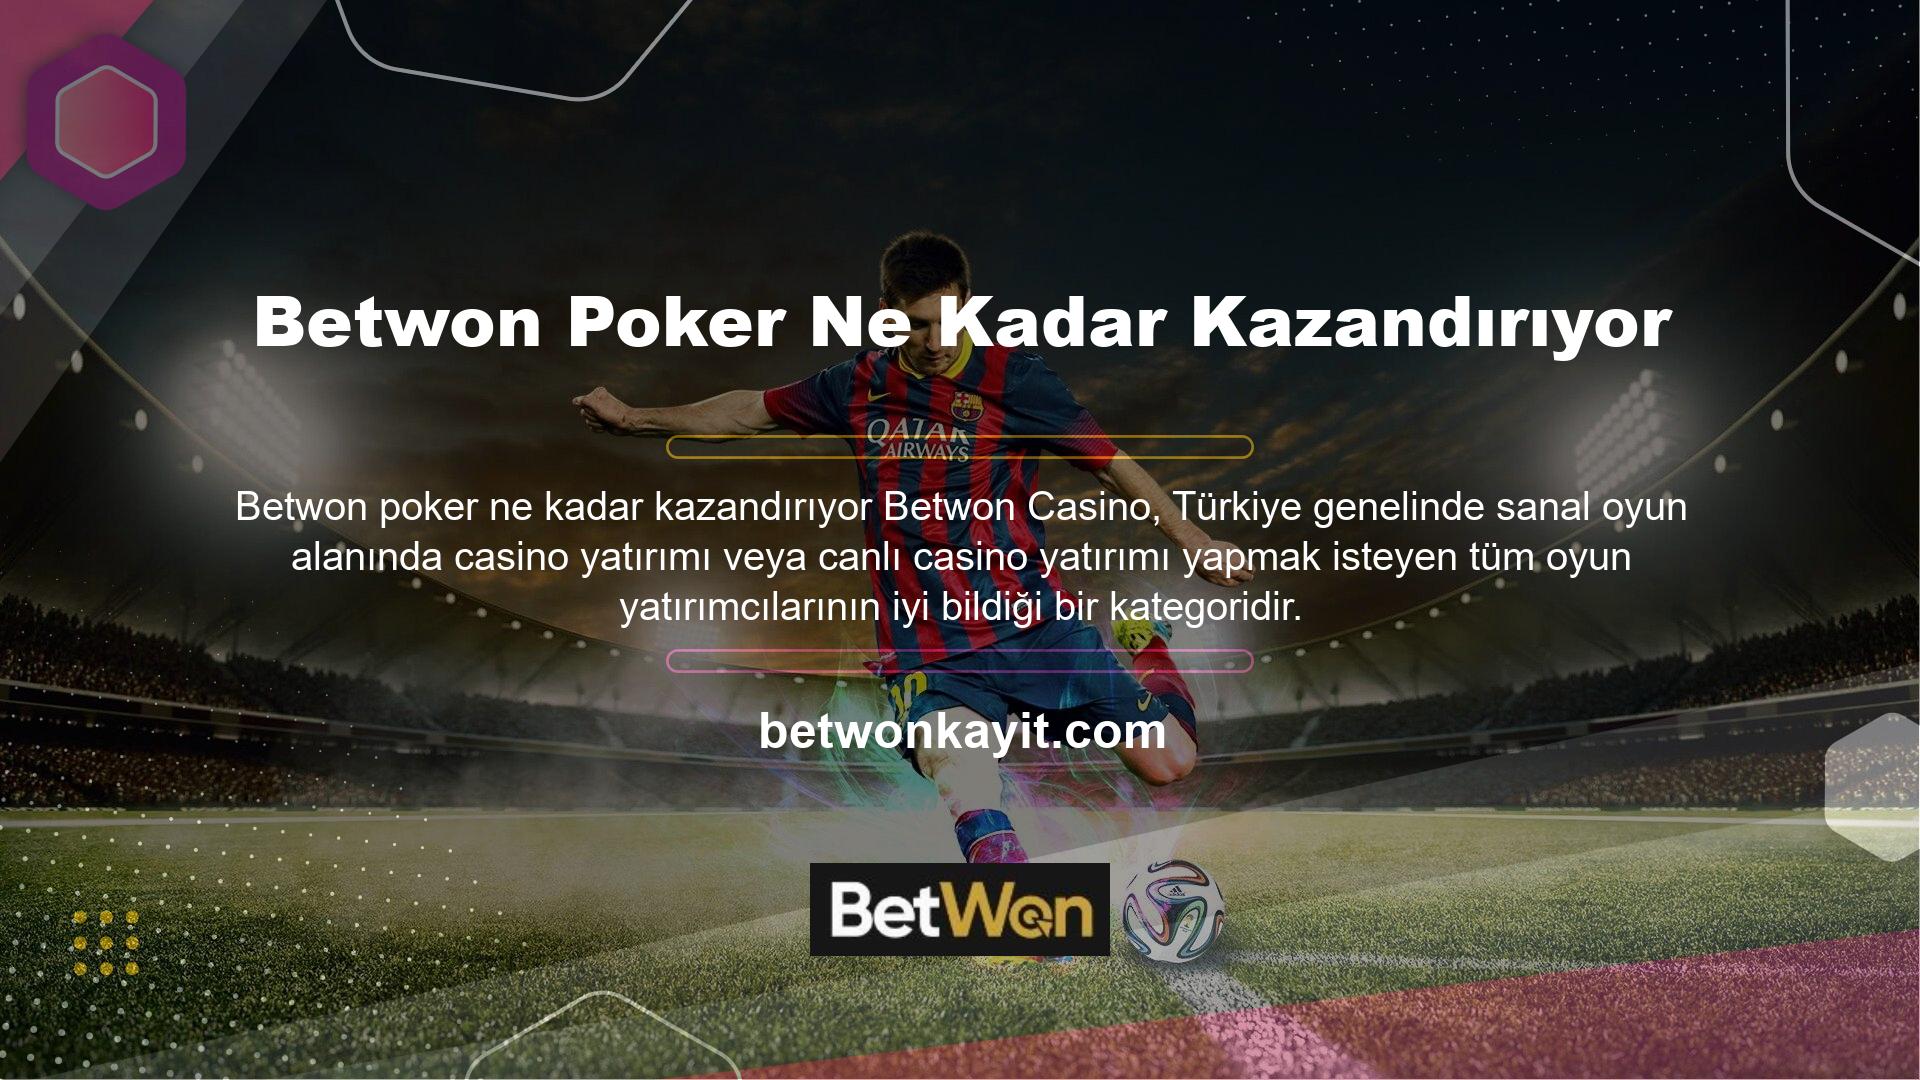 Betwon casino kategorisinin bu kadar çok kullanıcıya sahip olmasının ve bu kadar popüler olmasının en önemli nedenlerinden biri de alanında en çeşitli ve en iyi oyun seçeneklerini sunmasıdır